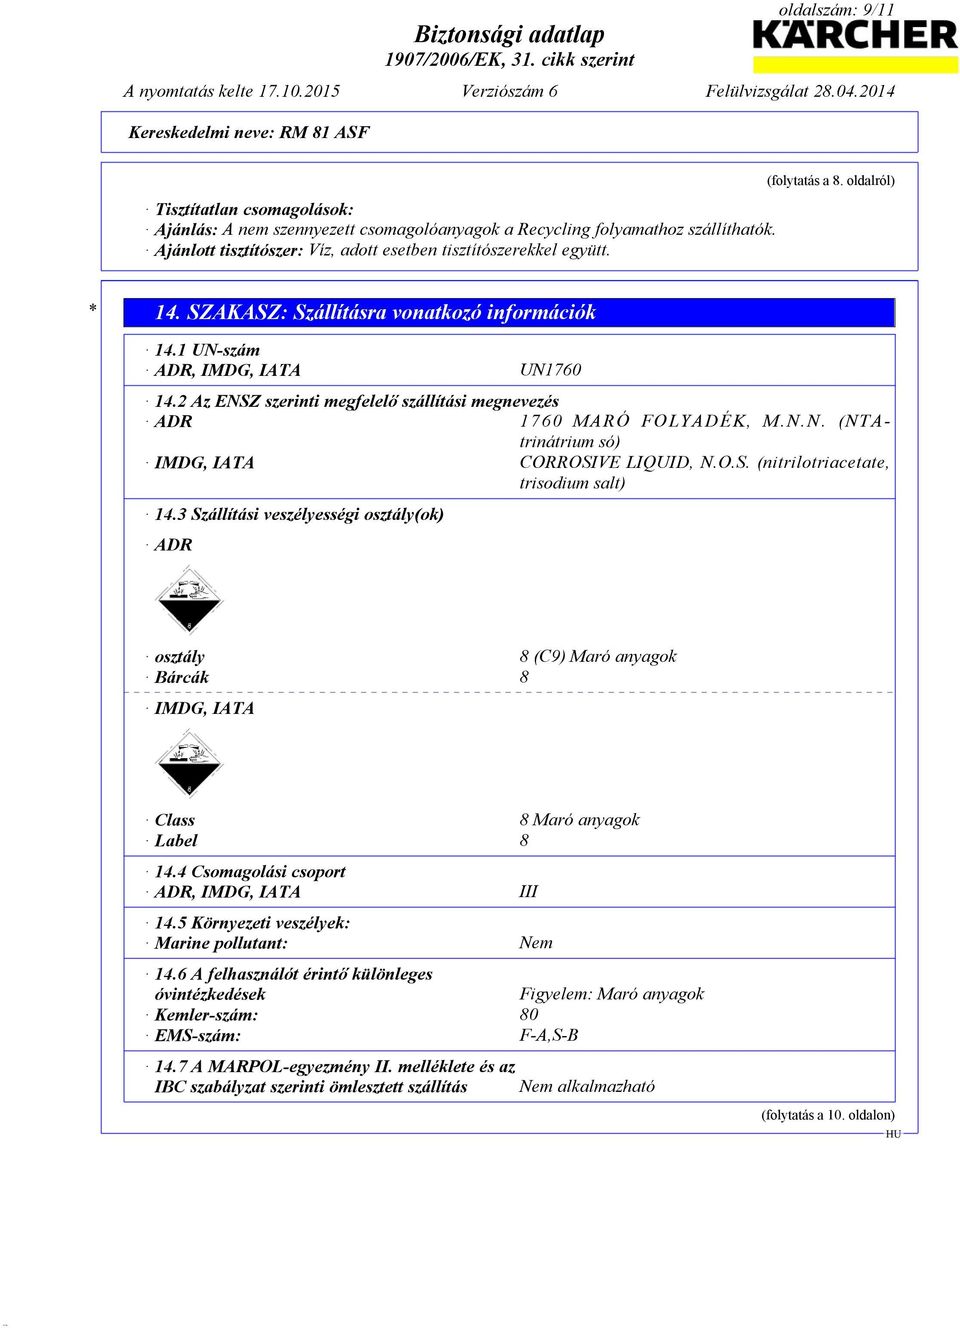 O.S. (nitrilotriacetate, trisodium salt) 14.3 Szállítási veszélyességi osztály(ok) ADR osztály 8 (C9) Maró anyagok Bárcák 8 IMDG, IATA Class 8 Maró anyagok Label 8 14.